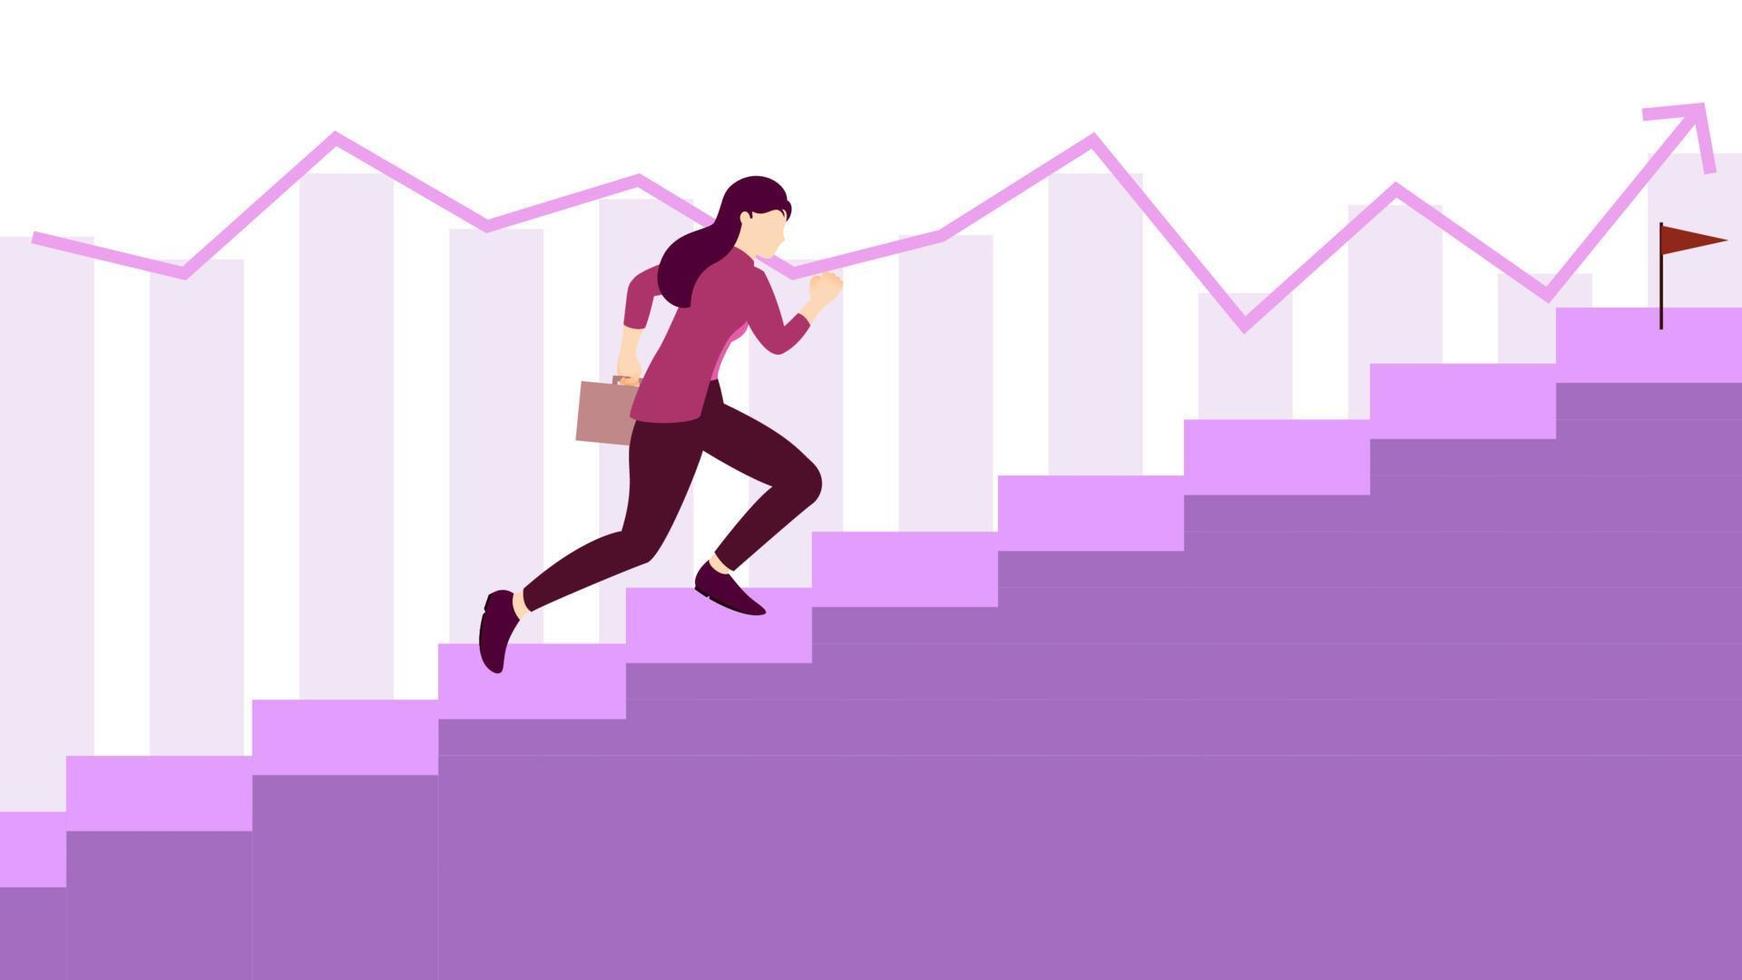 vrouw loopt op trappen naar finish met kantoortas. bedrijfsconcept karakter illustratie op witte achtergrond. vector